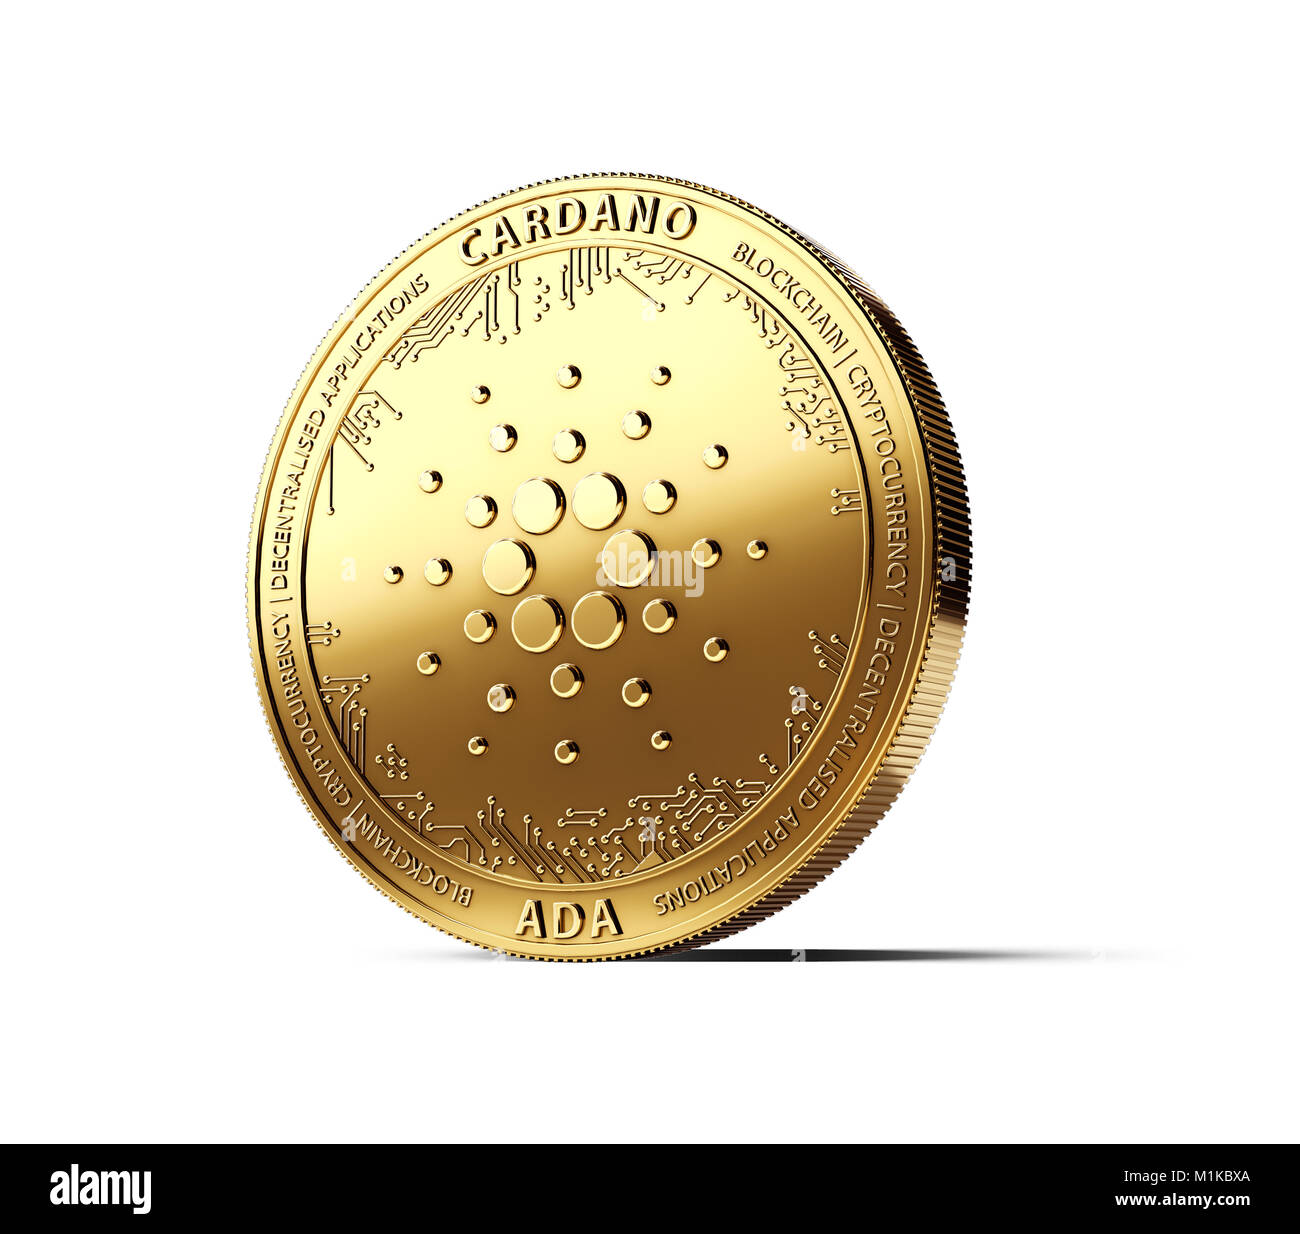 Golden CARDANO (ADA) cryptocurrency physikalischen Konzept Münze auf weißem Hintergrund. 3D-Rendering Stockfoto